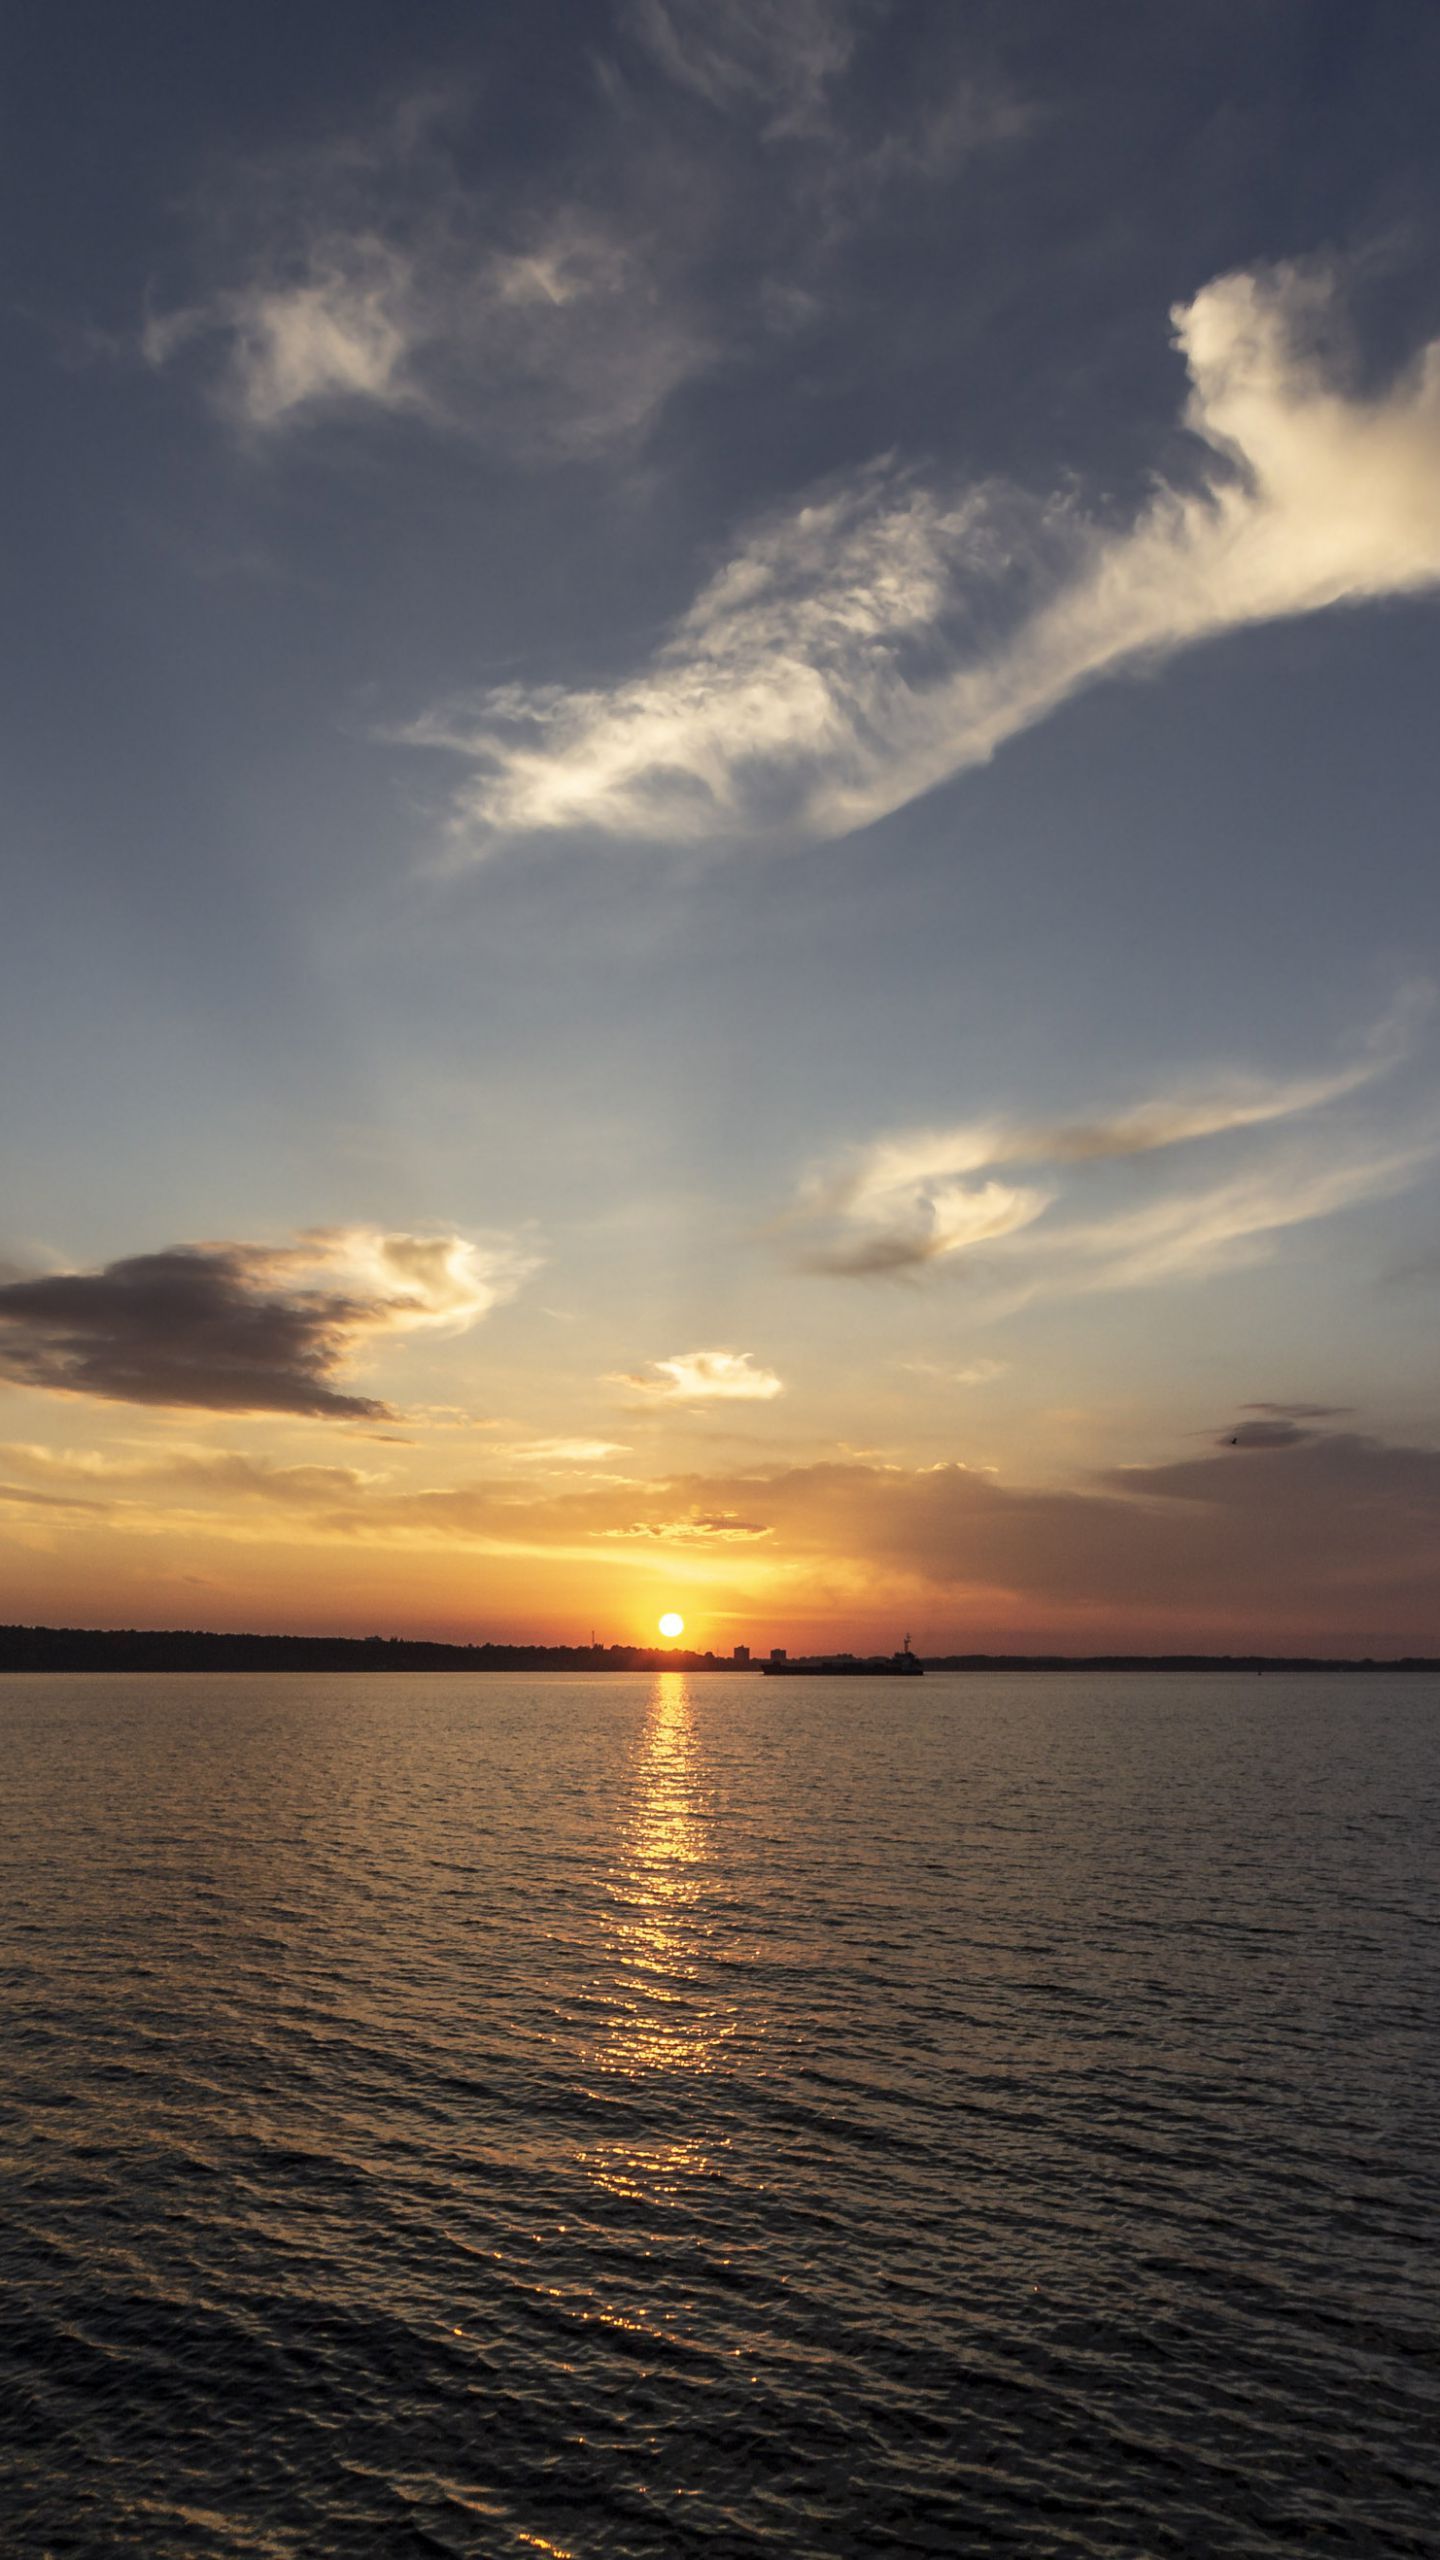  Sonnenuntergang Hintergrundbild 1440x2560. Hintergrundbilder. Kieler Förde Sonnenuntergang